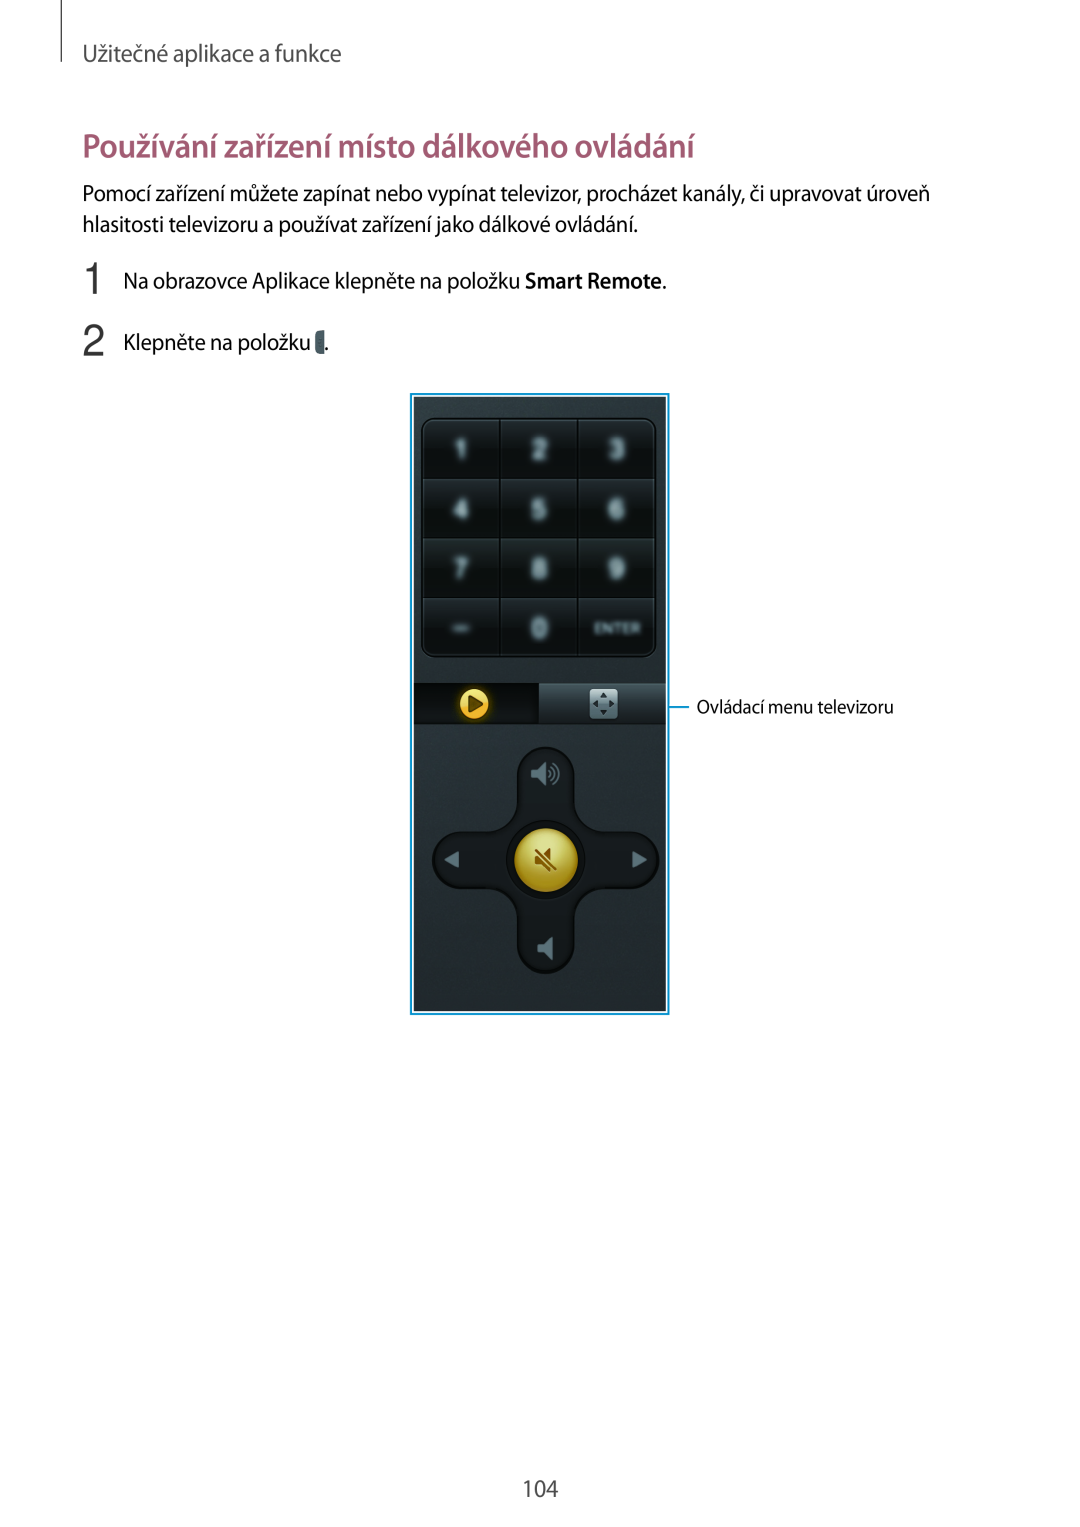 Samsung SM-T700NTSAXEH Používání zařízení místo dálkového ovládání, Užitečné aplikace a funkce, Ovládací menu televizoru 